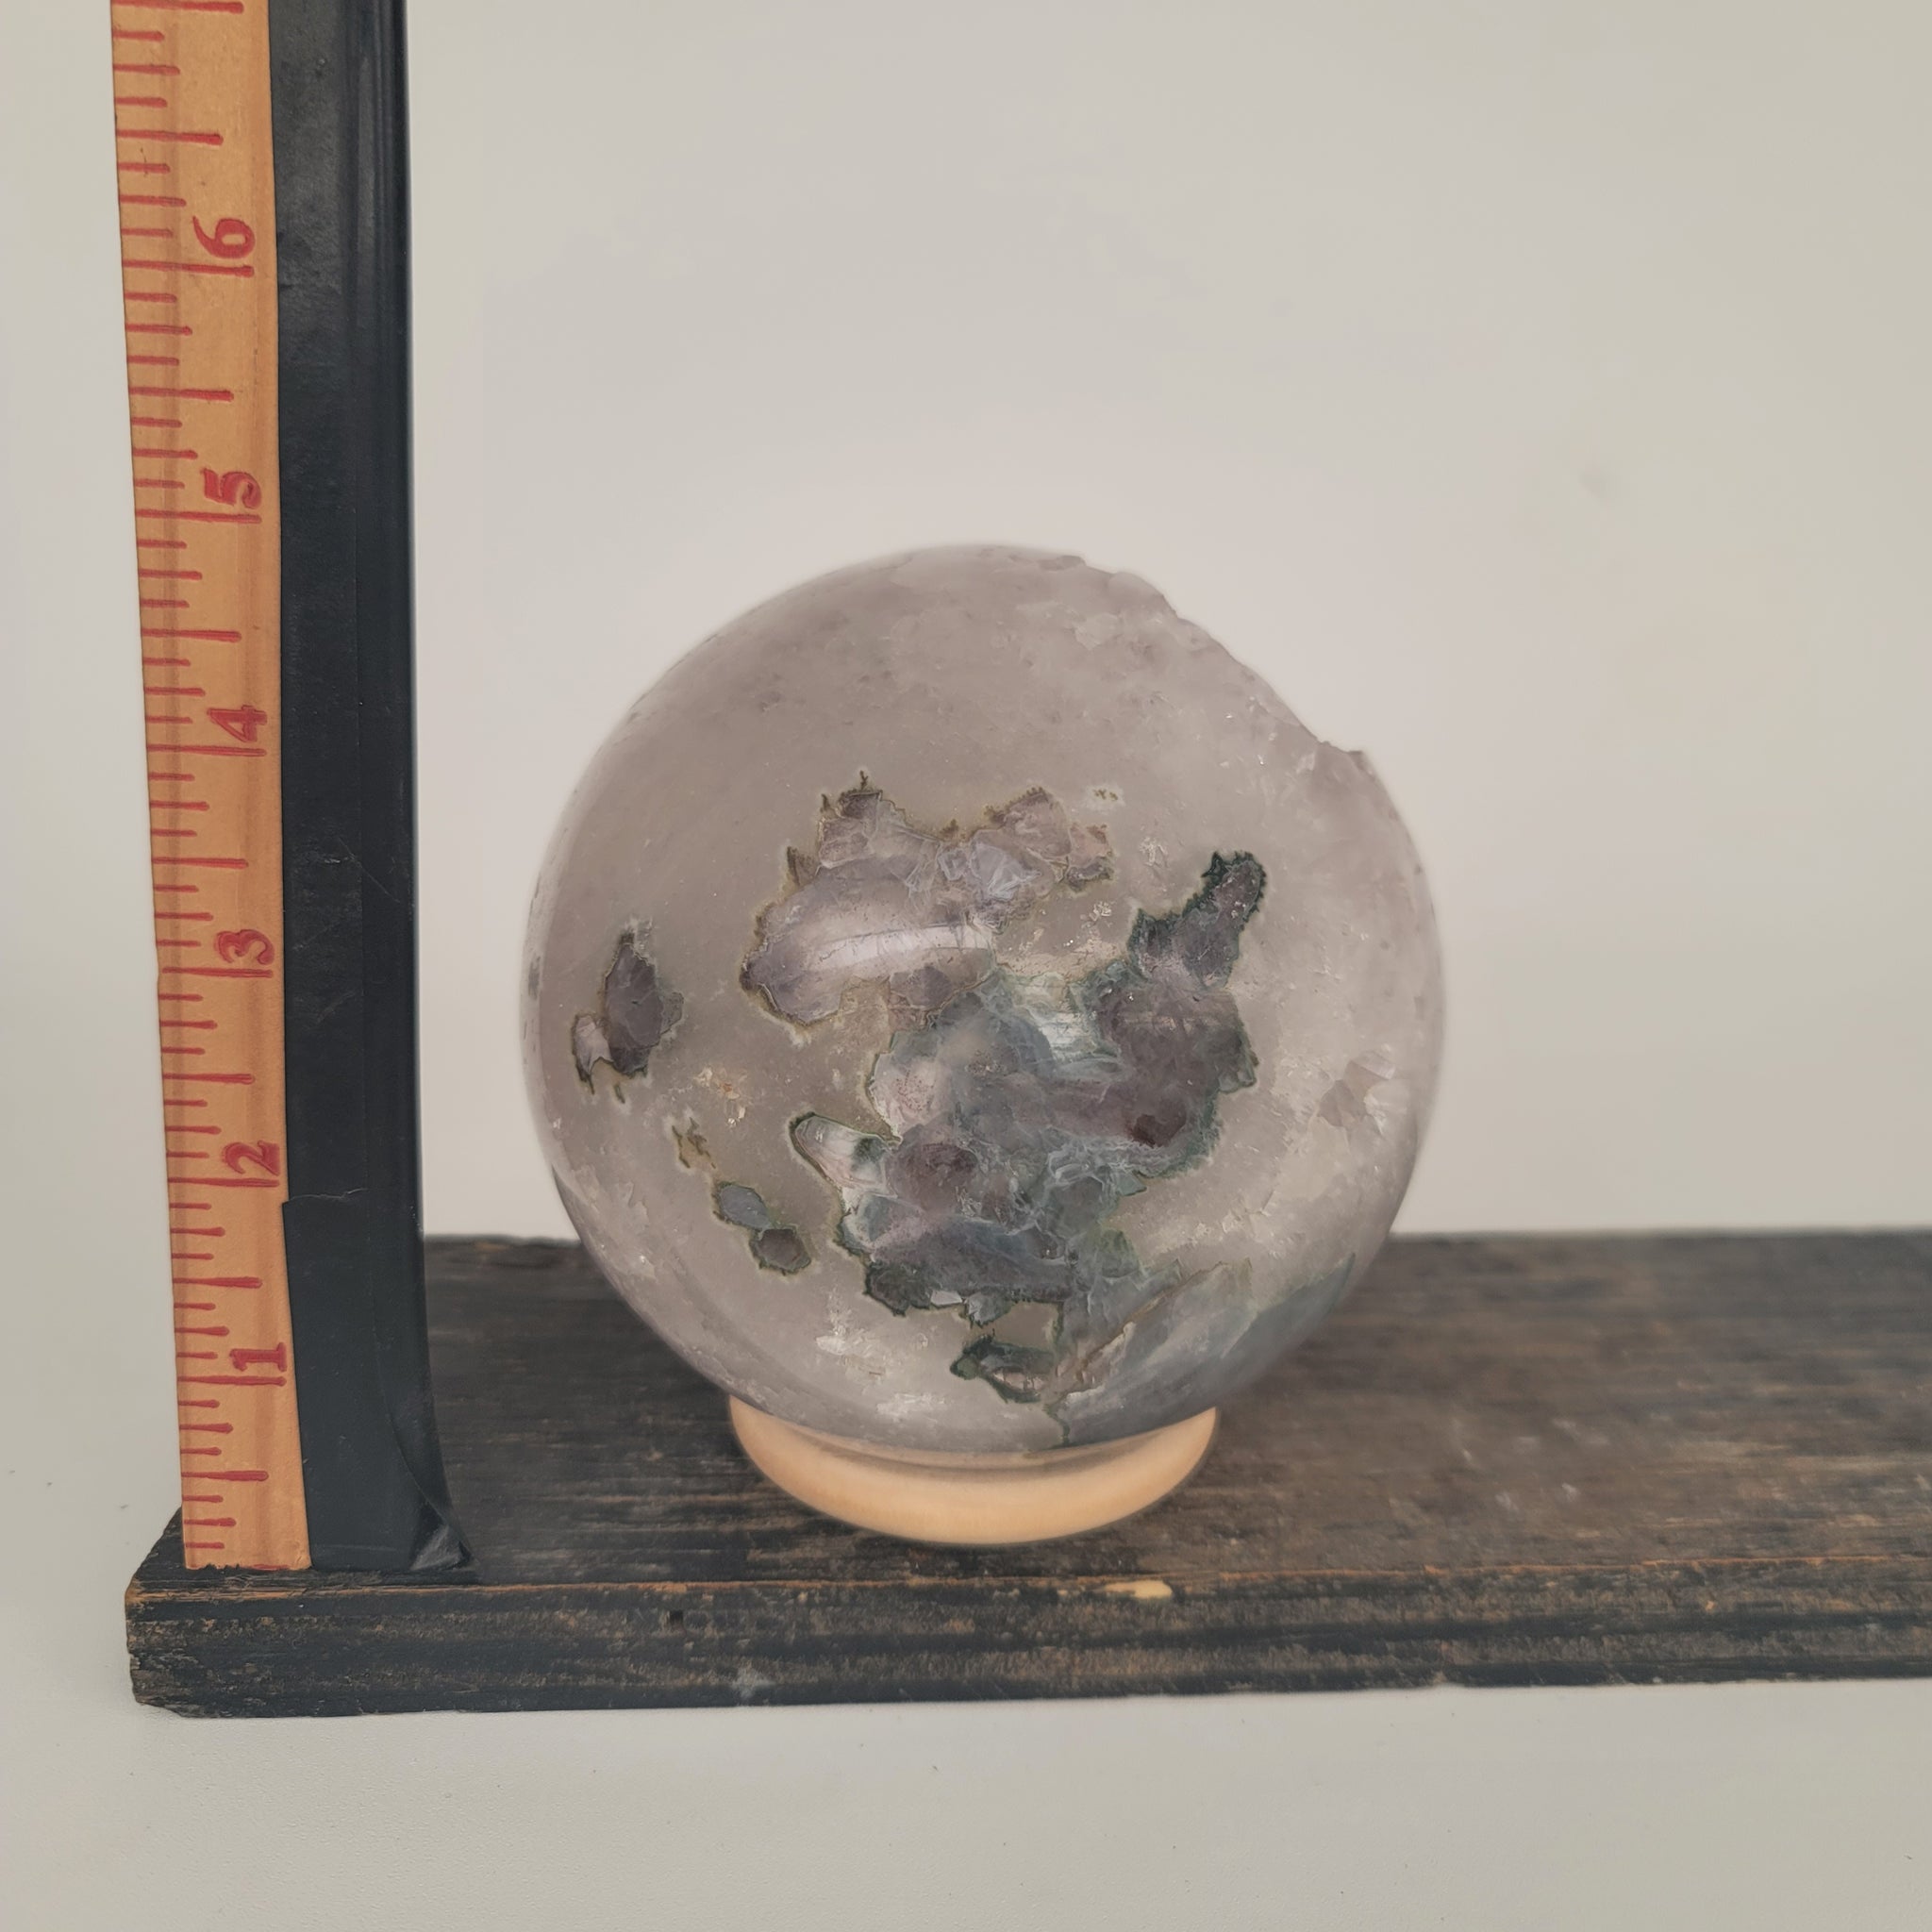 Amethyst Geode Sphere (6.7 lbs _ S-103)